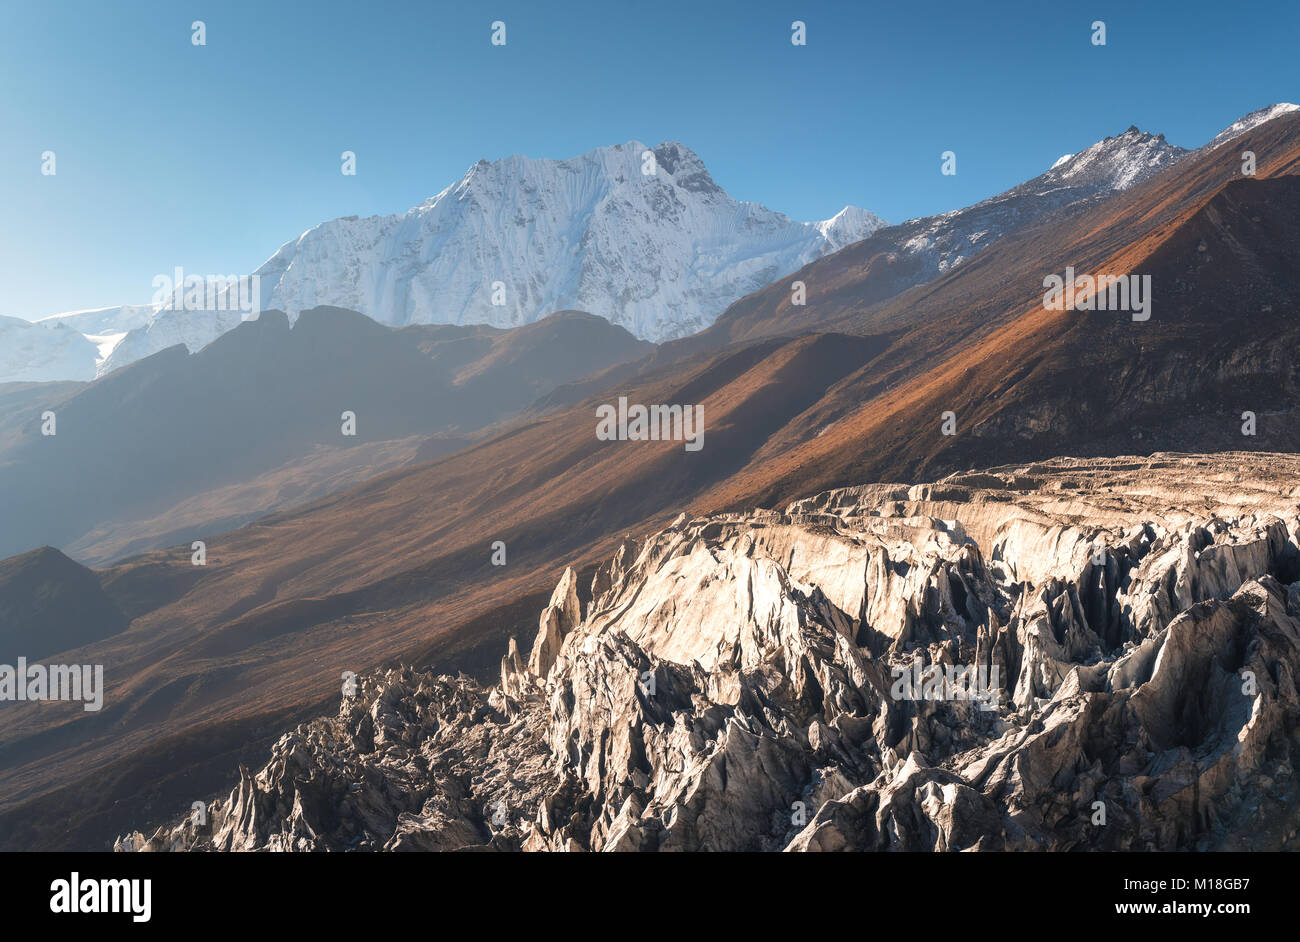 Hermosas vistas de montañas cubiertas de nieve contra el cielo azul al amanecer en Nepal. Paisaje con los picos nevados de las montañas del Himalaya, glaciar, rocas, colinas Foto de stock